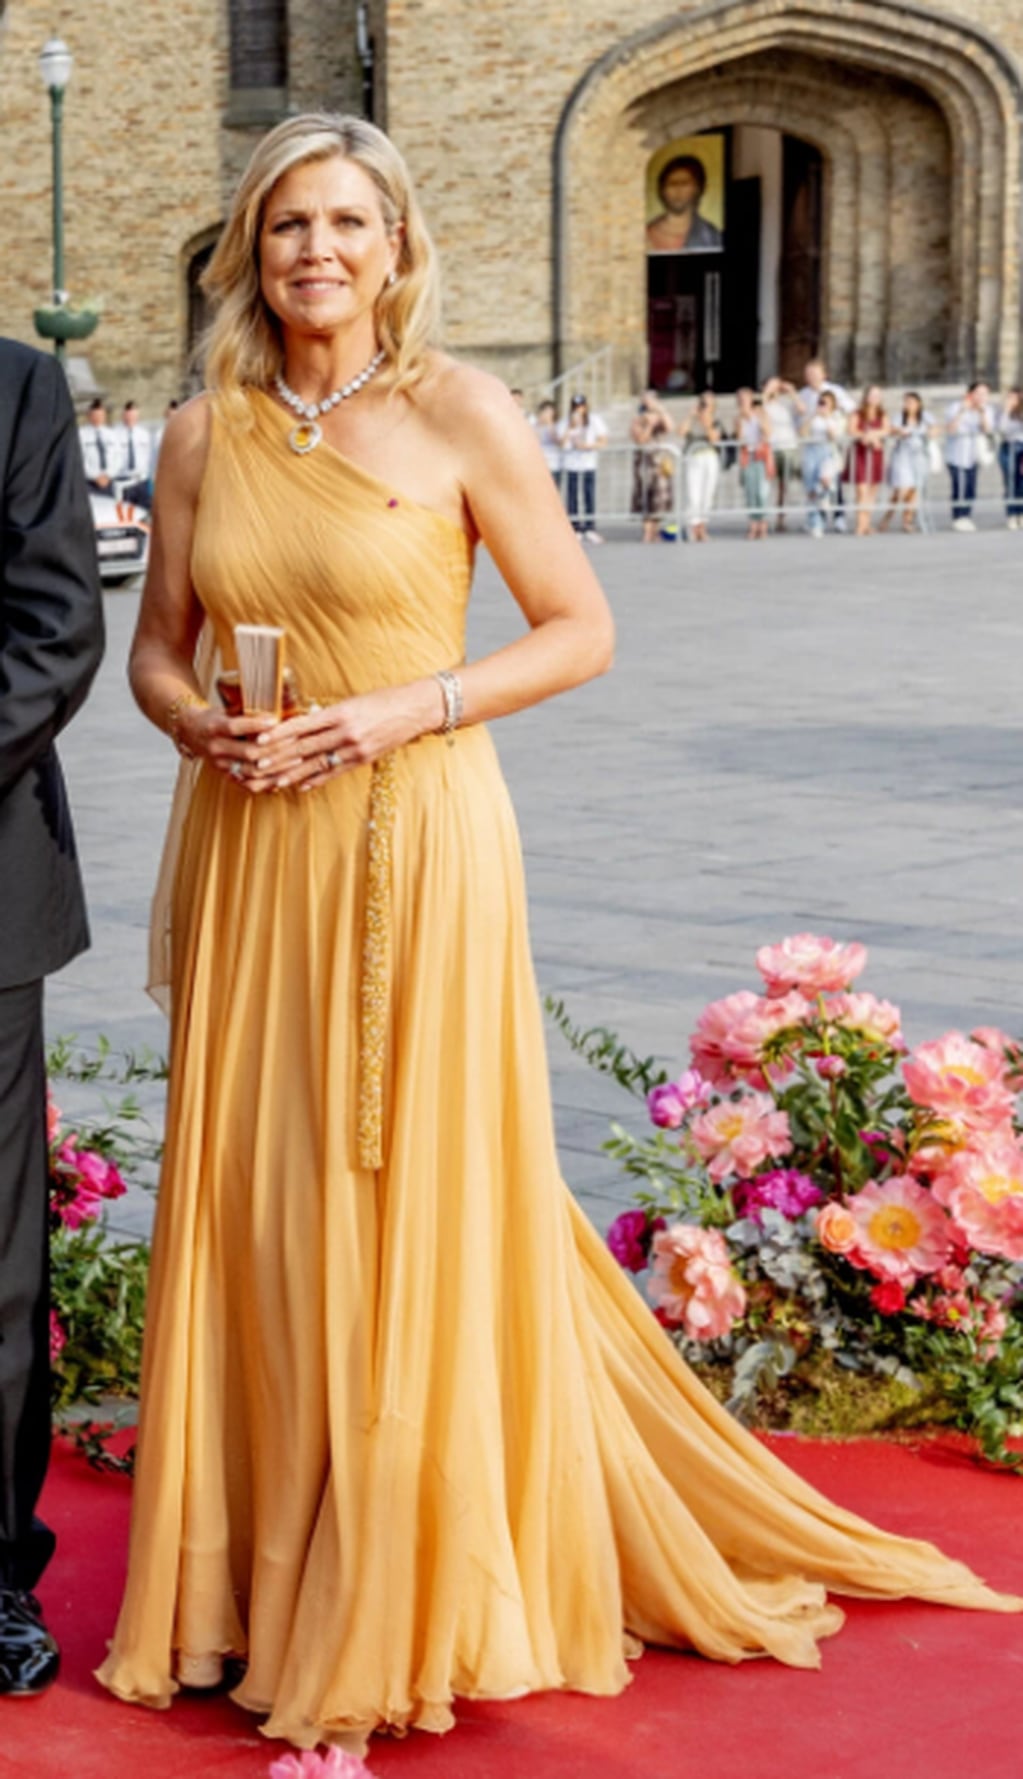 La monarca lució un increíble y exclusivo vestido para su visita de estado en Bélgica.